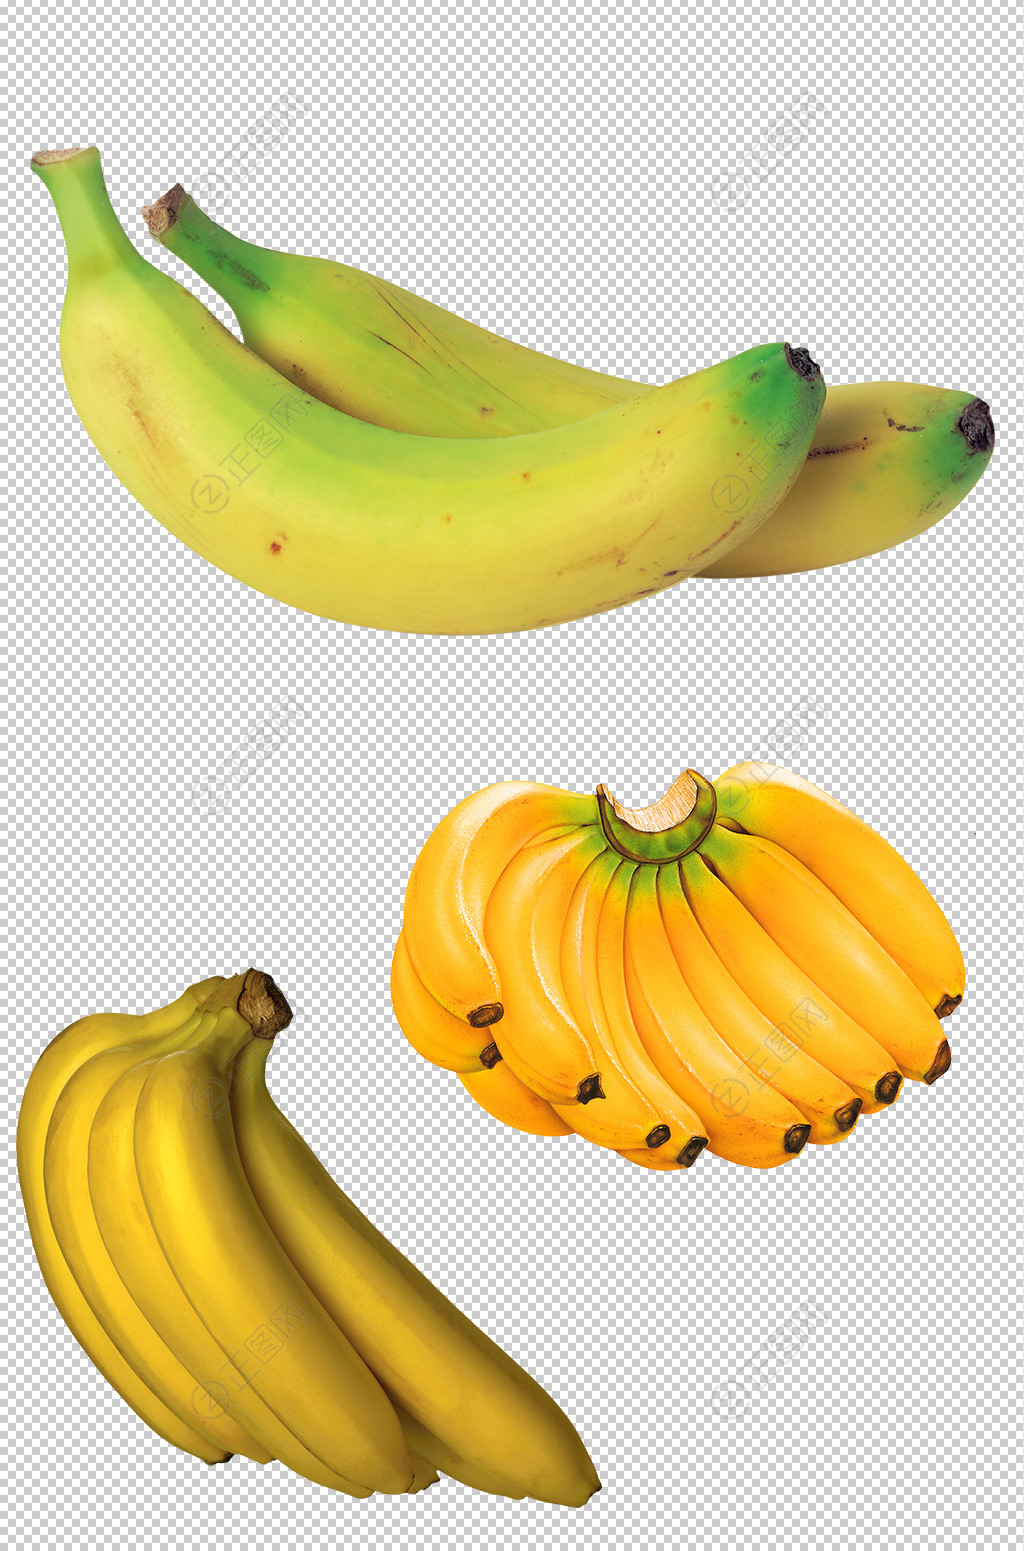 绿香蕉束高清摄影大图-千库网